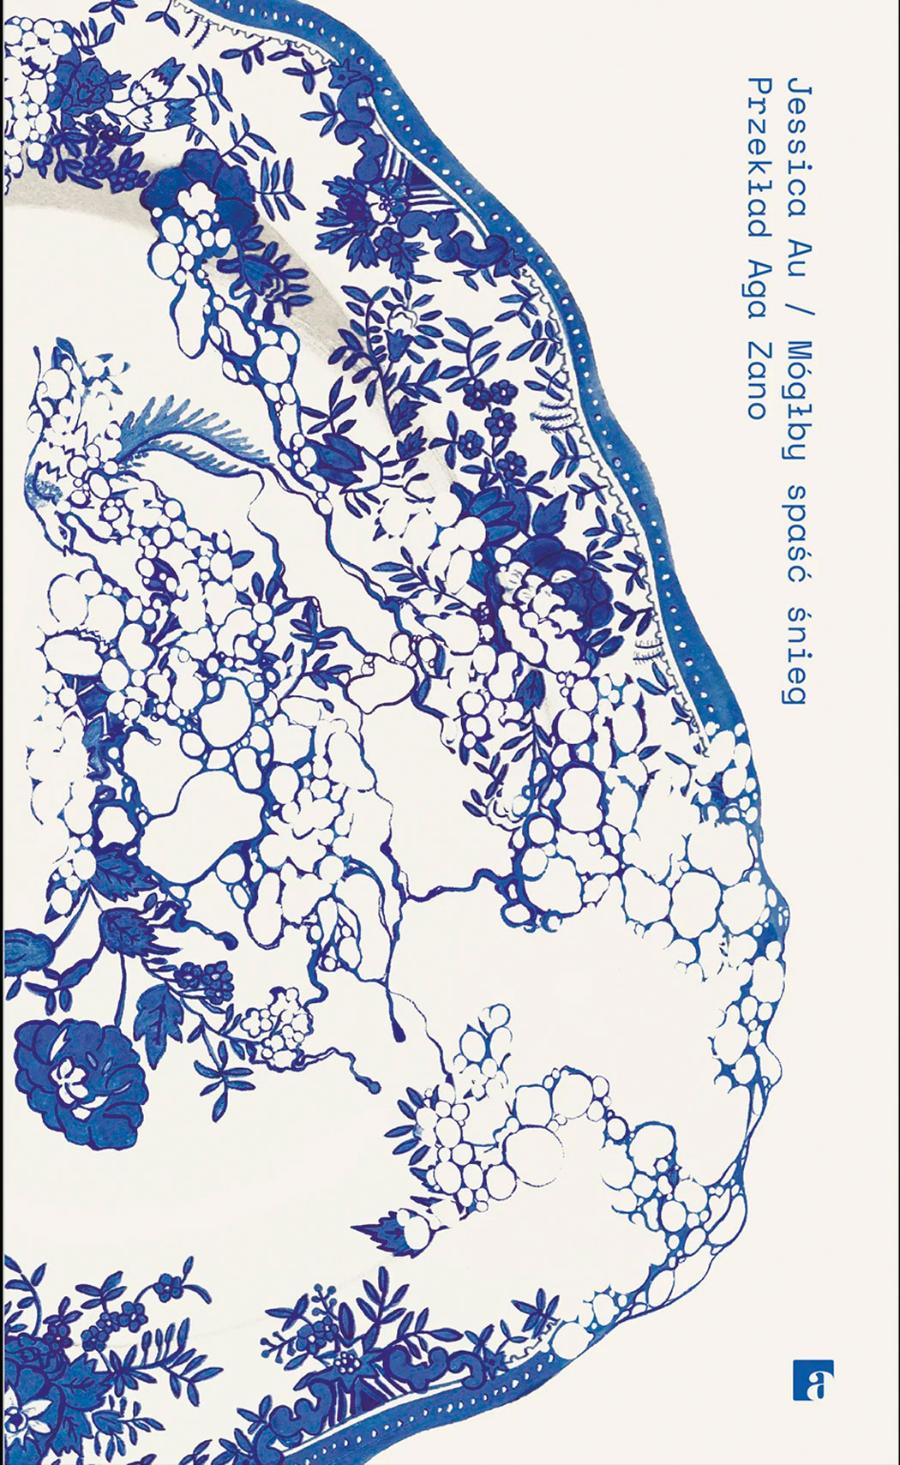 okładka książki abstrakcyjny obraz z motywami roślinnymi